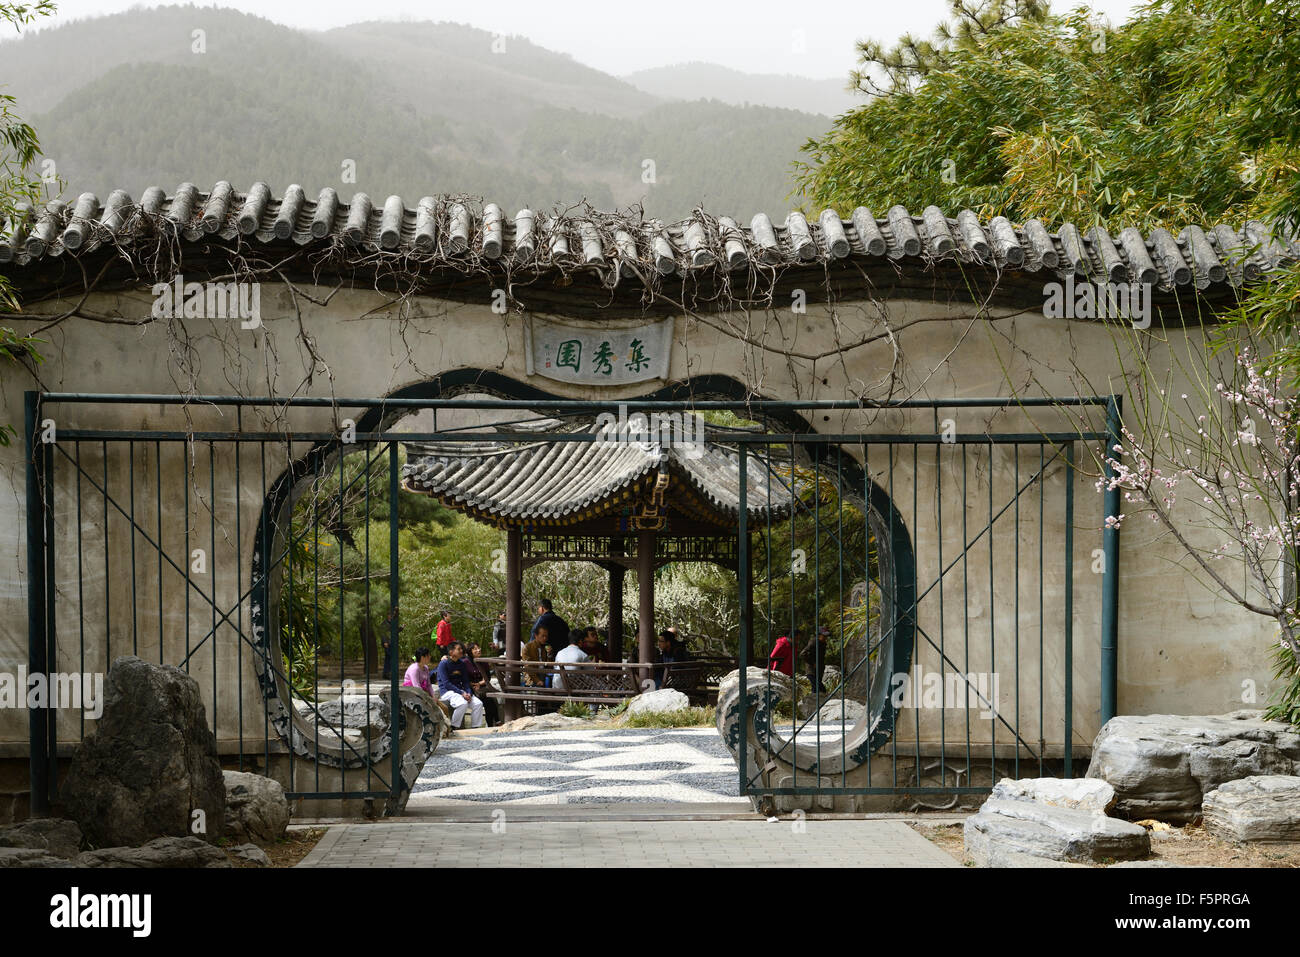 La pagode en bois de pique-nique lac porte Jardin botanique de Beijing Chine Printemps Floral RM Banque D'Images